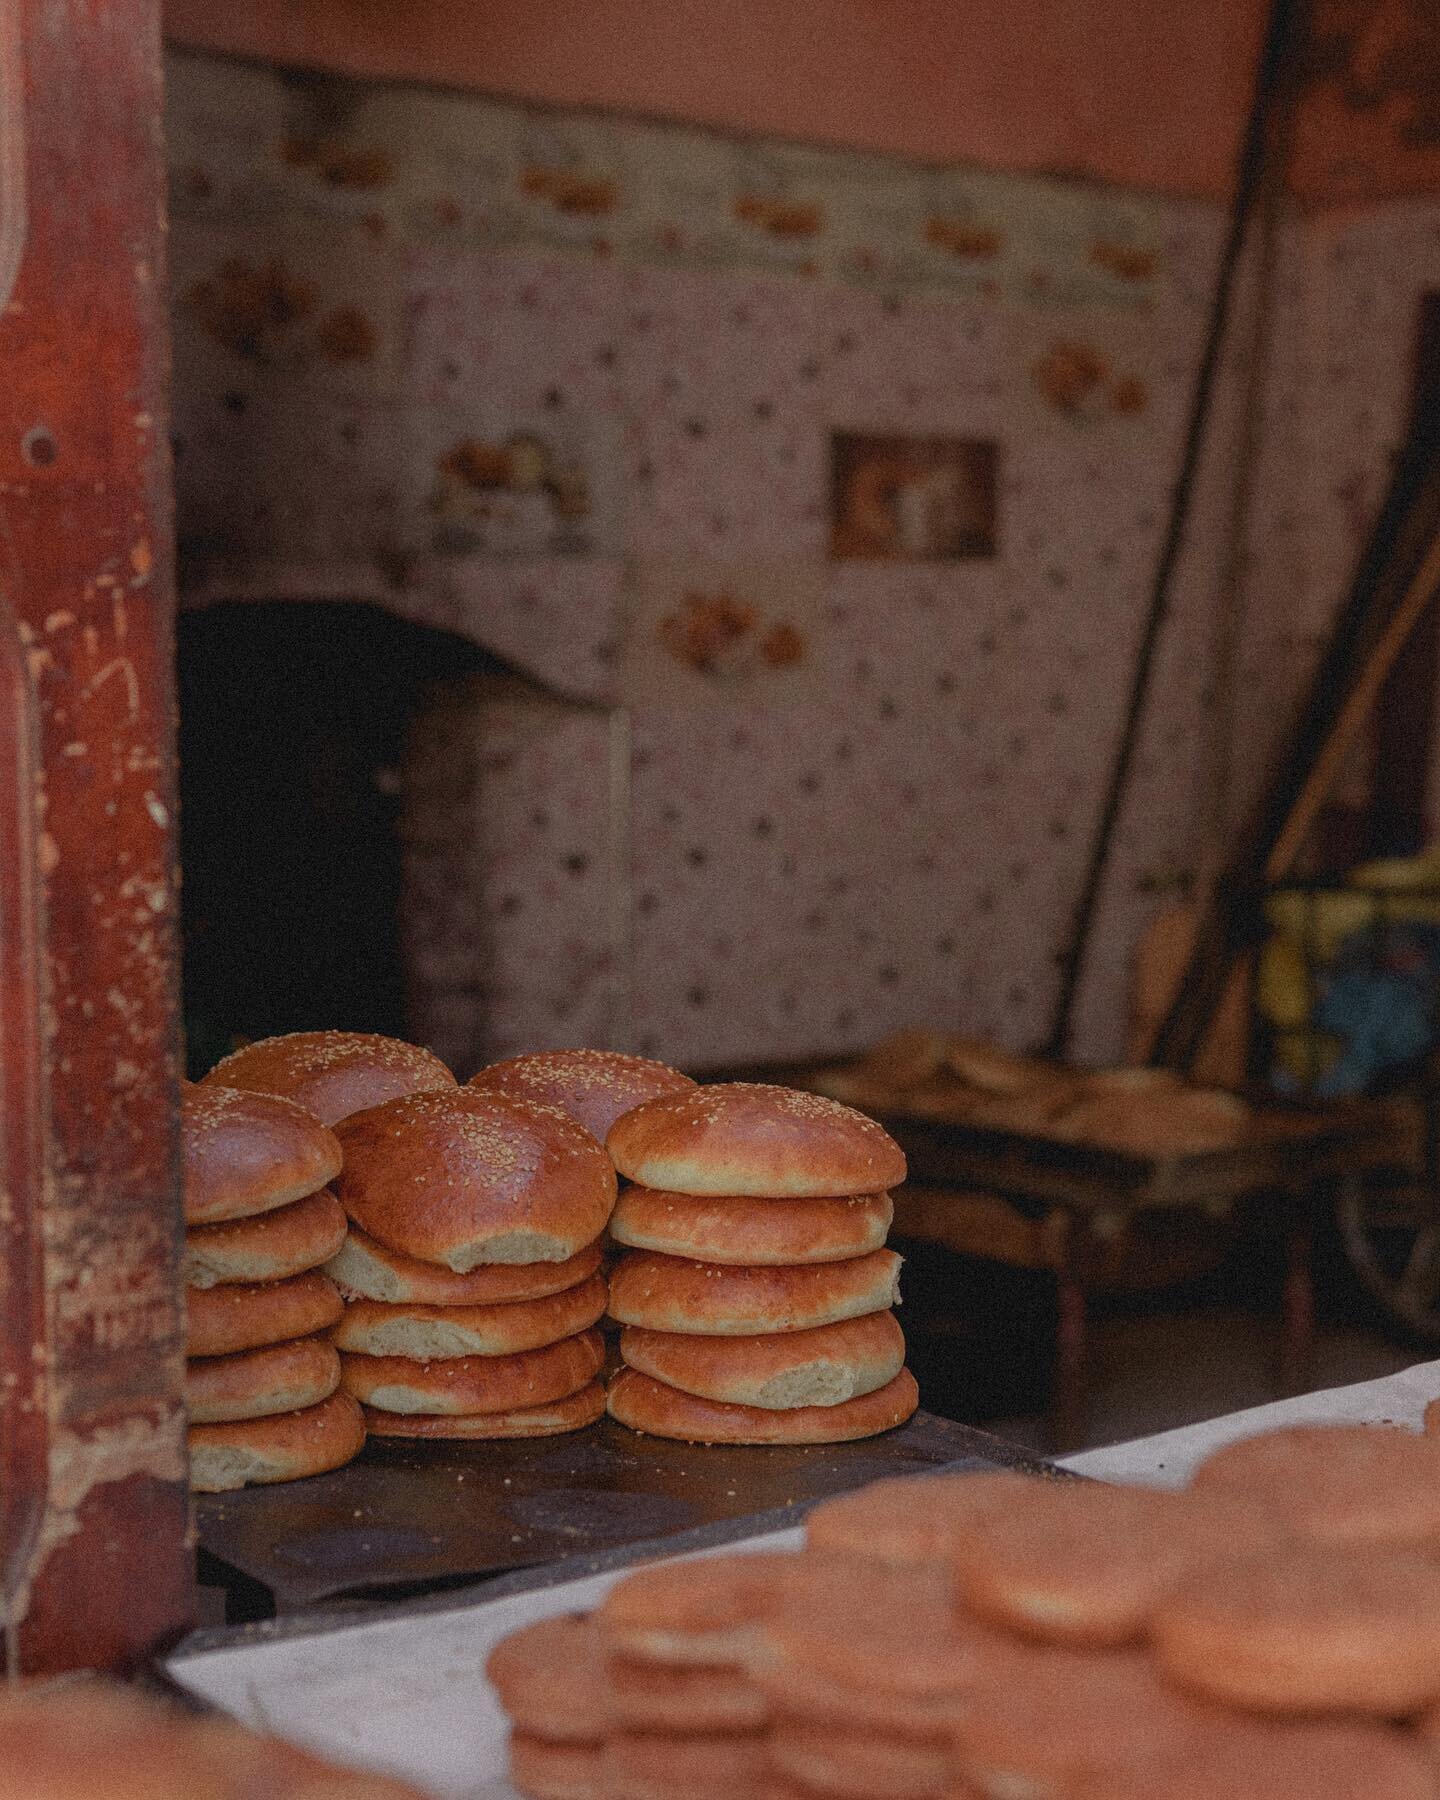 bread, all the Moroccan bread please #travelmorocco